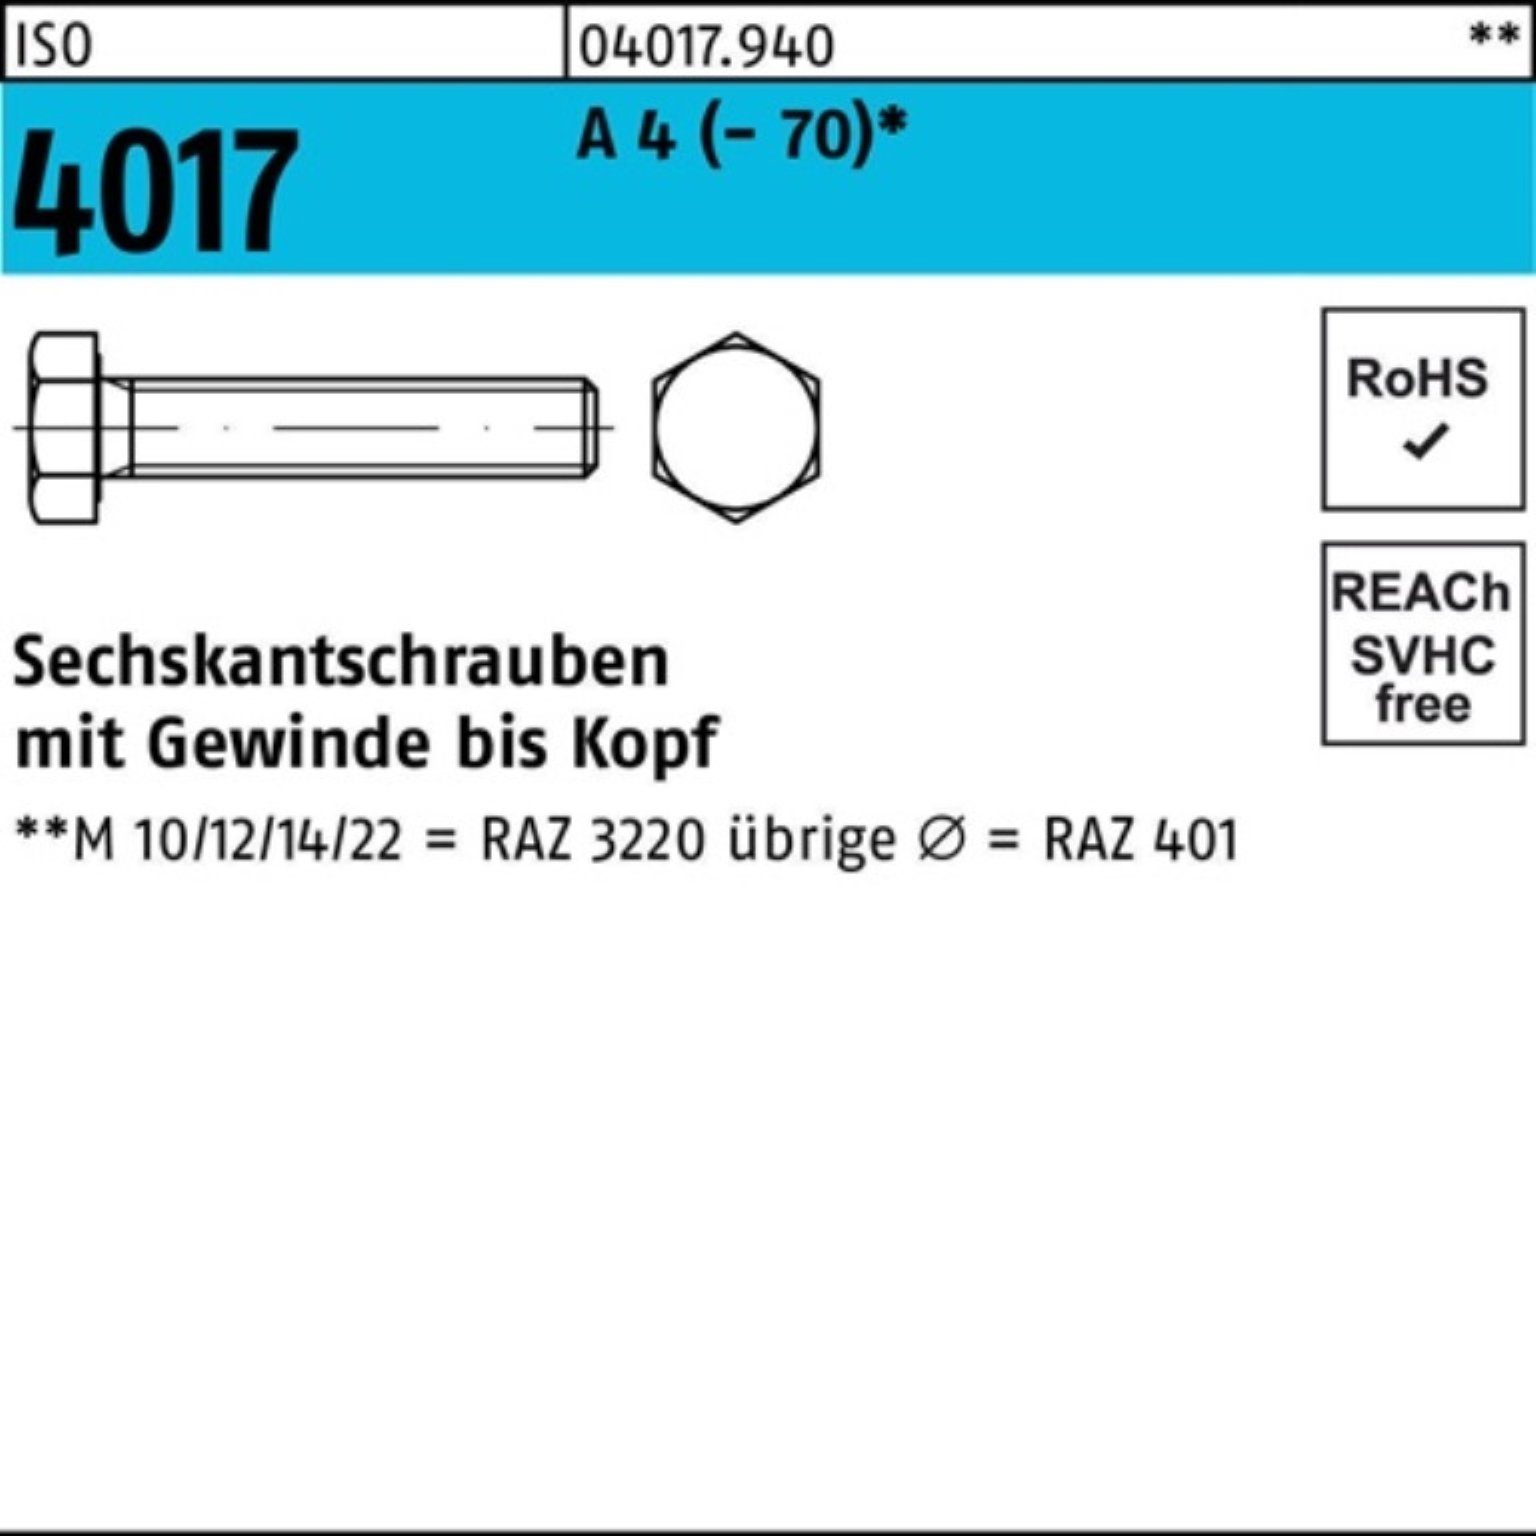 Bufab Sechskantschraube 100er Pack Sechskantschraube ISO 4017 VG M24x 100 A 4 (70) 1 Stück | Schrauben